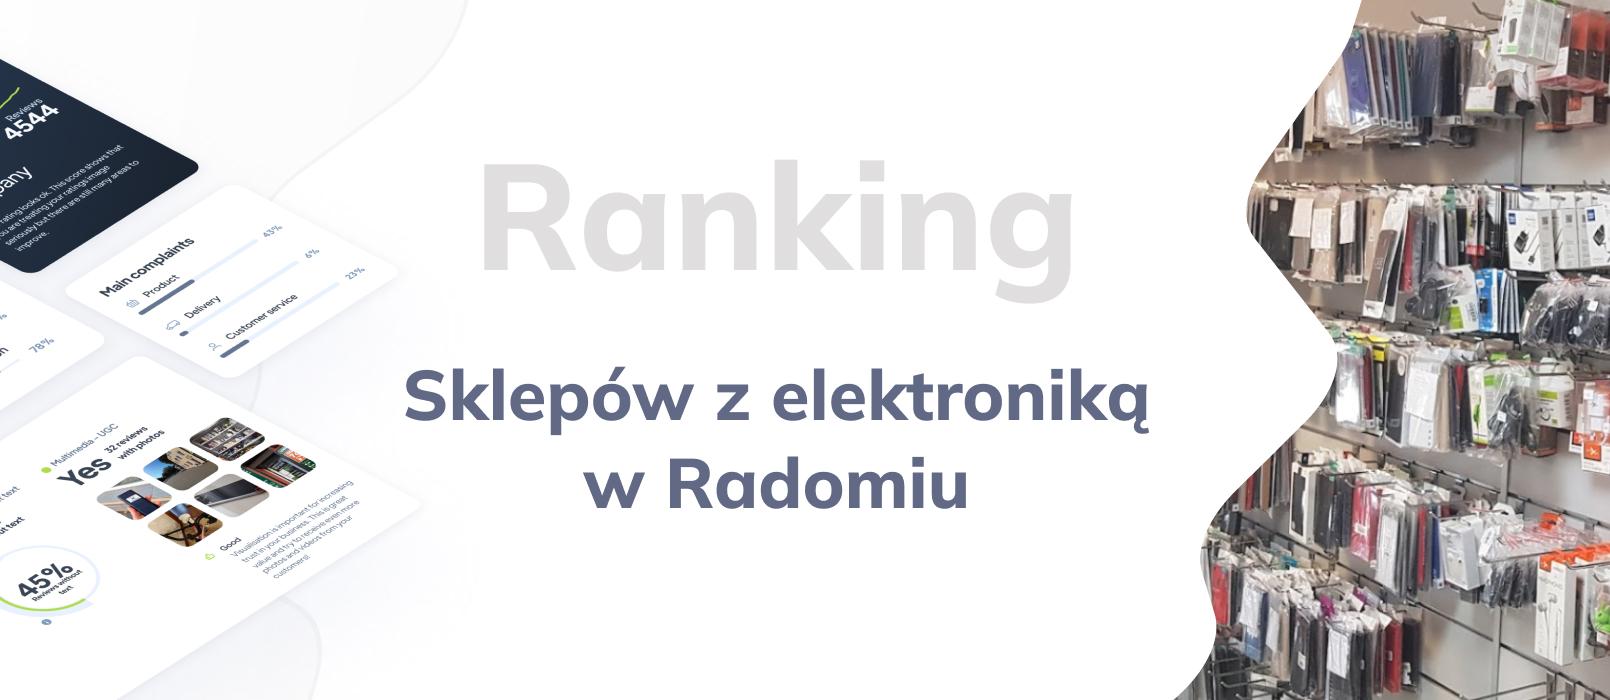 Najlepsze sklepy z elektroniką w Radomiu - TOP 10